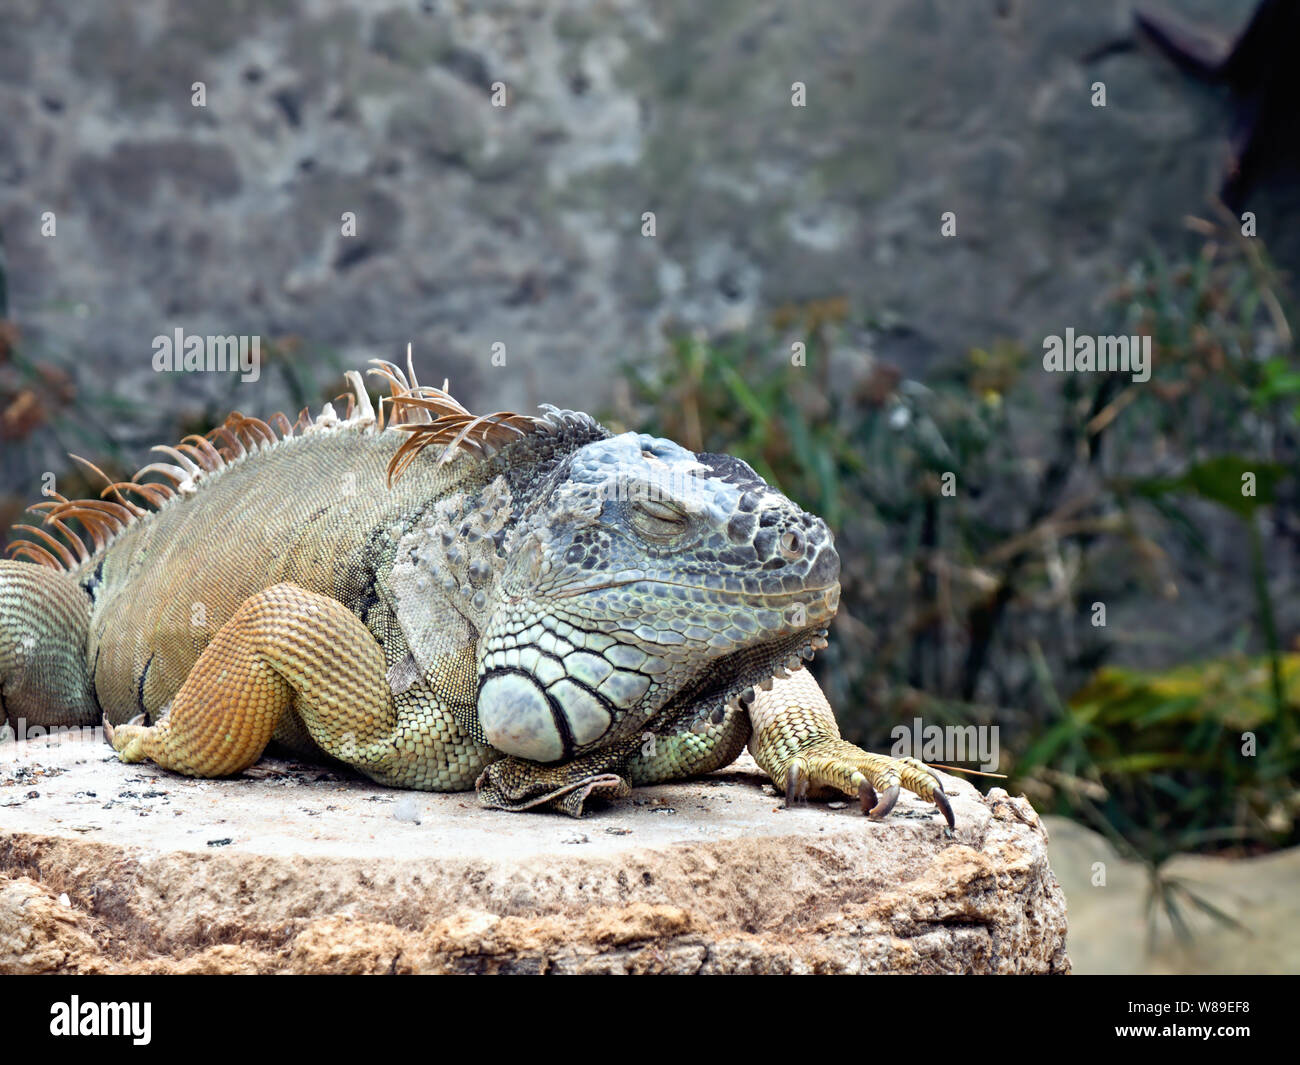 Un grand iguane adulte avec différentes nuances de vert et bleu ainsi qu'un peu de jaune se trouve sur un rocher, la jambe droite derrière la crête, sur la Banque D'Images